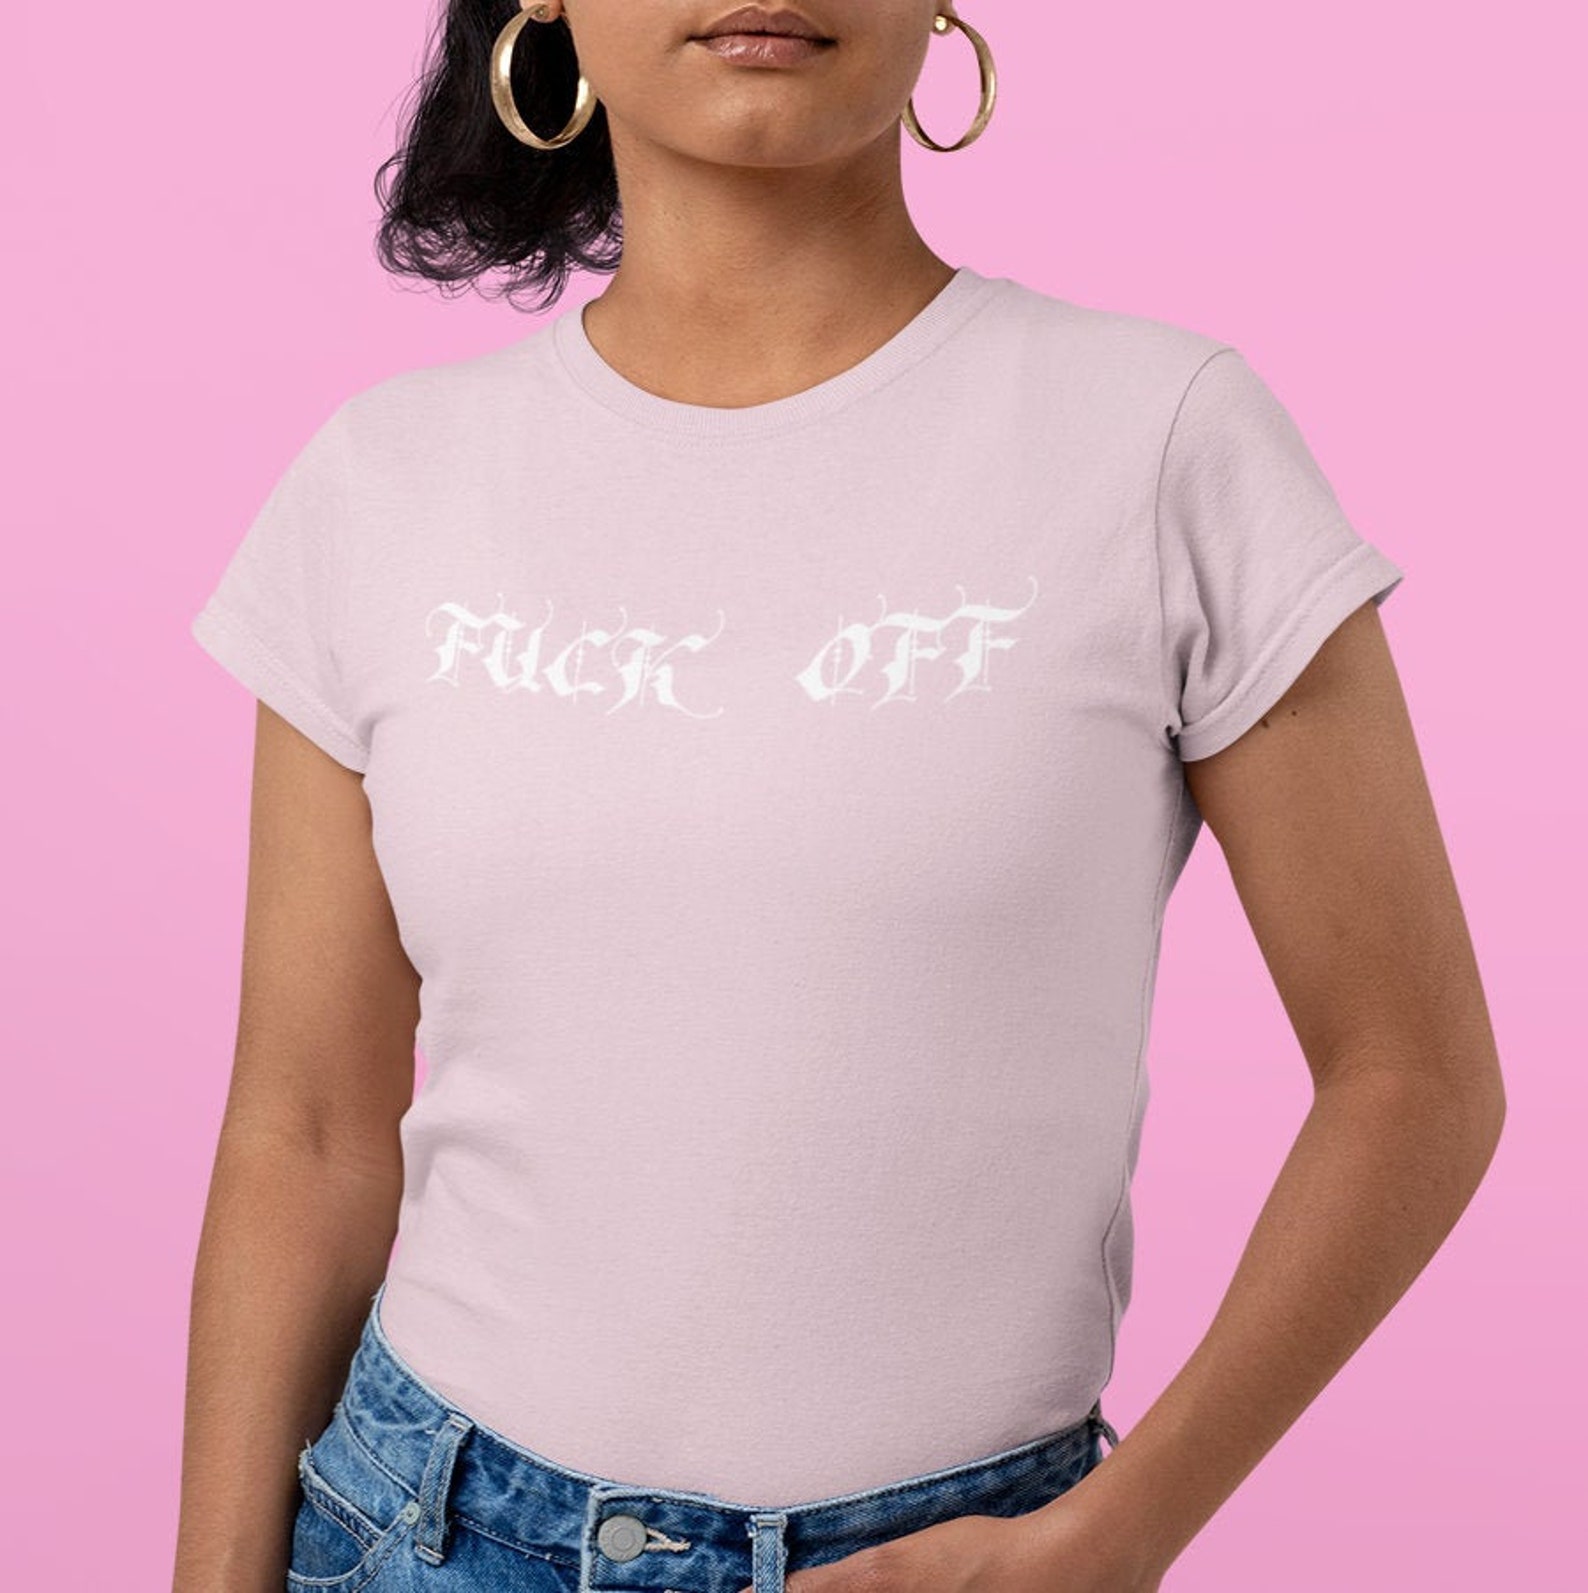 Fck off Y2K Women's T-shirt 2000s Aesthetic Cute Pink - Etsy